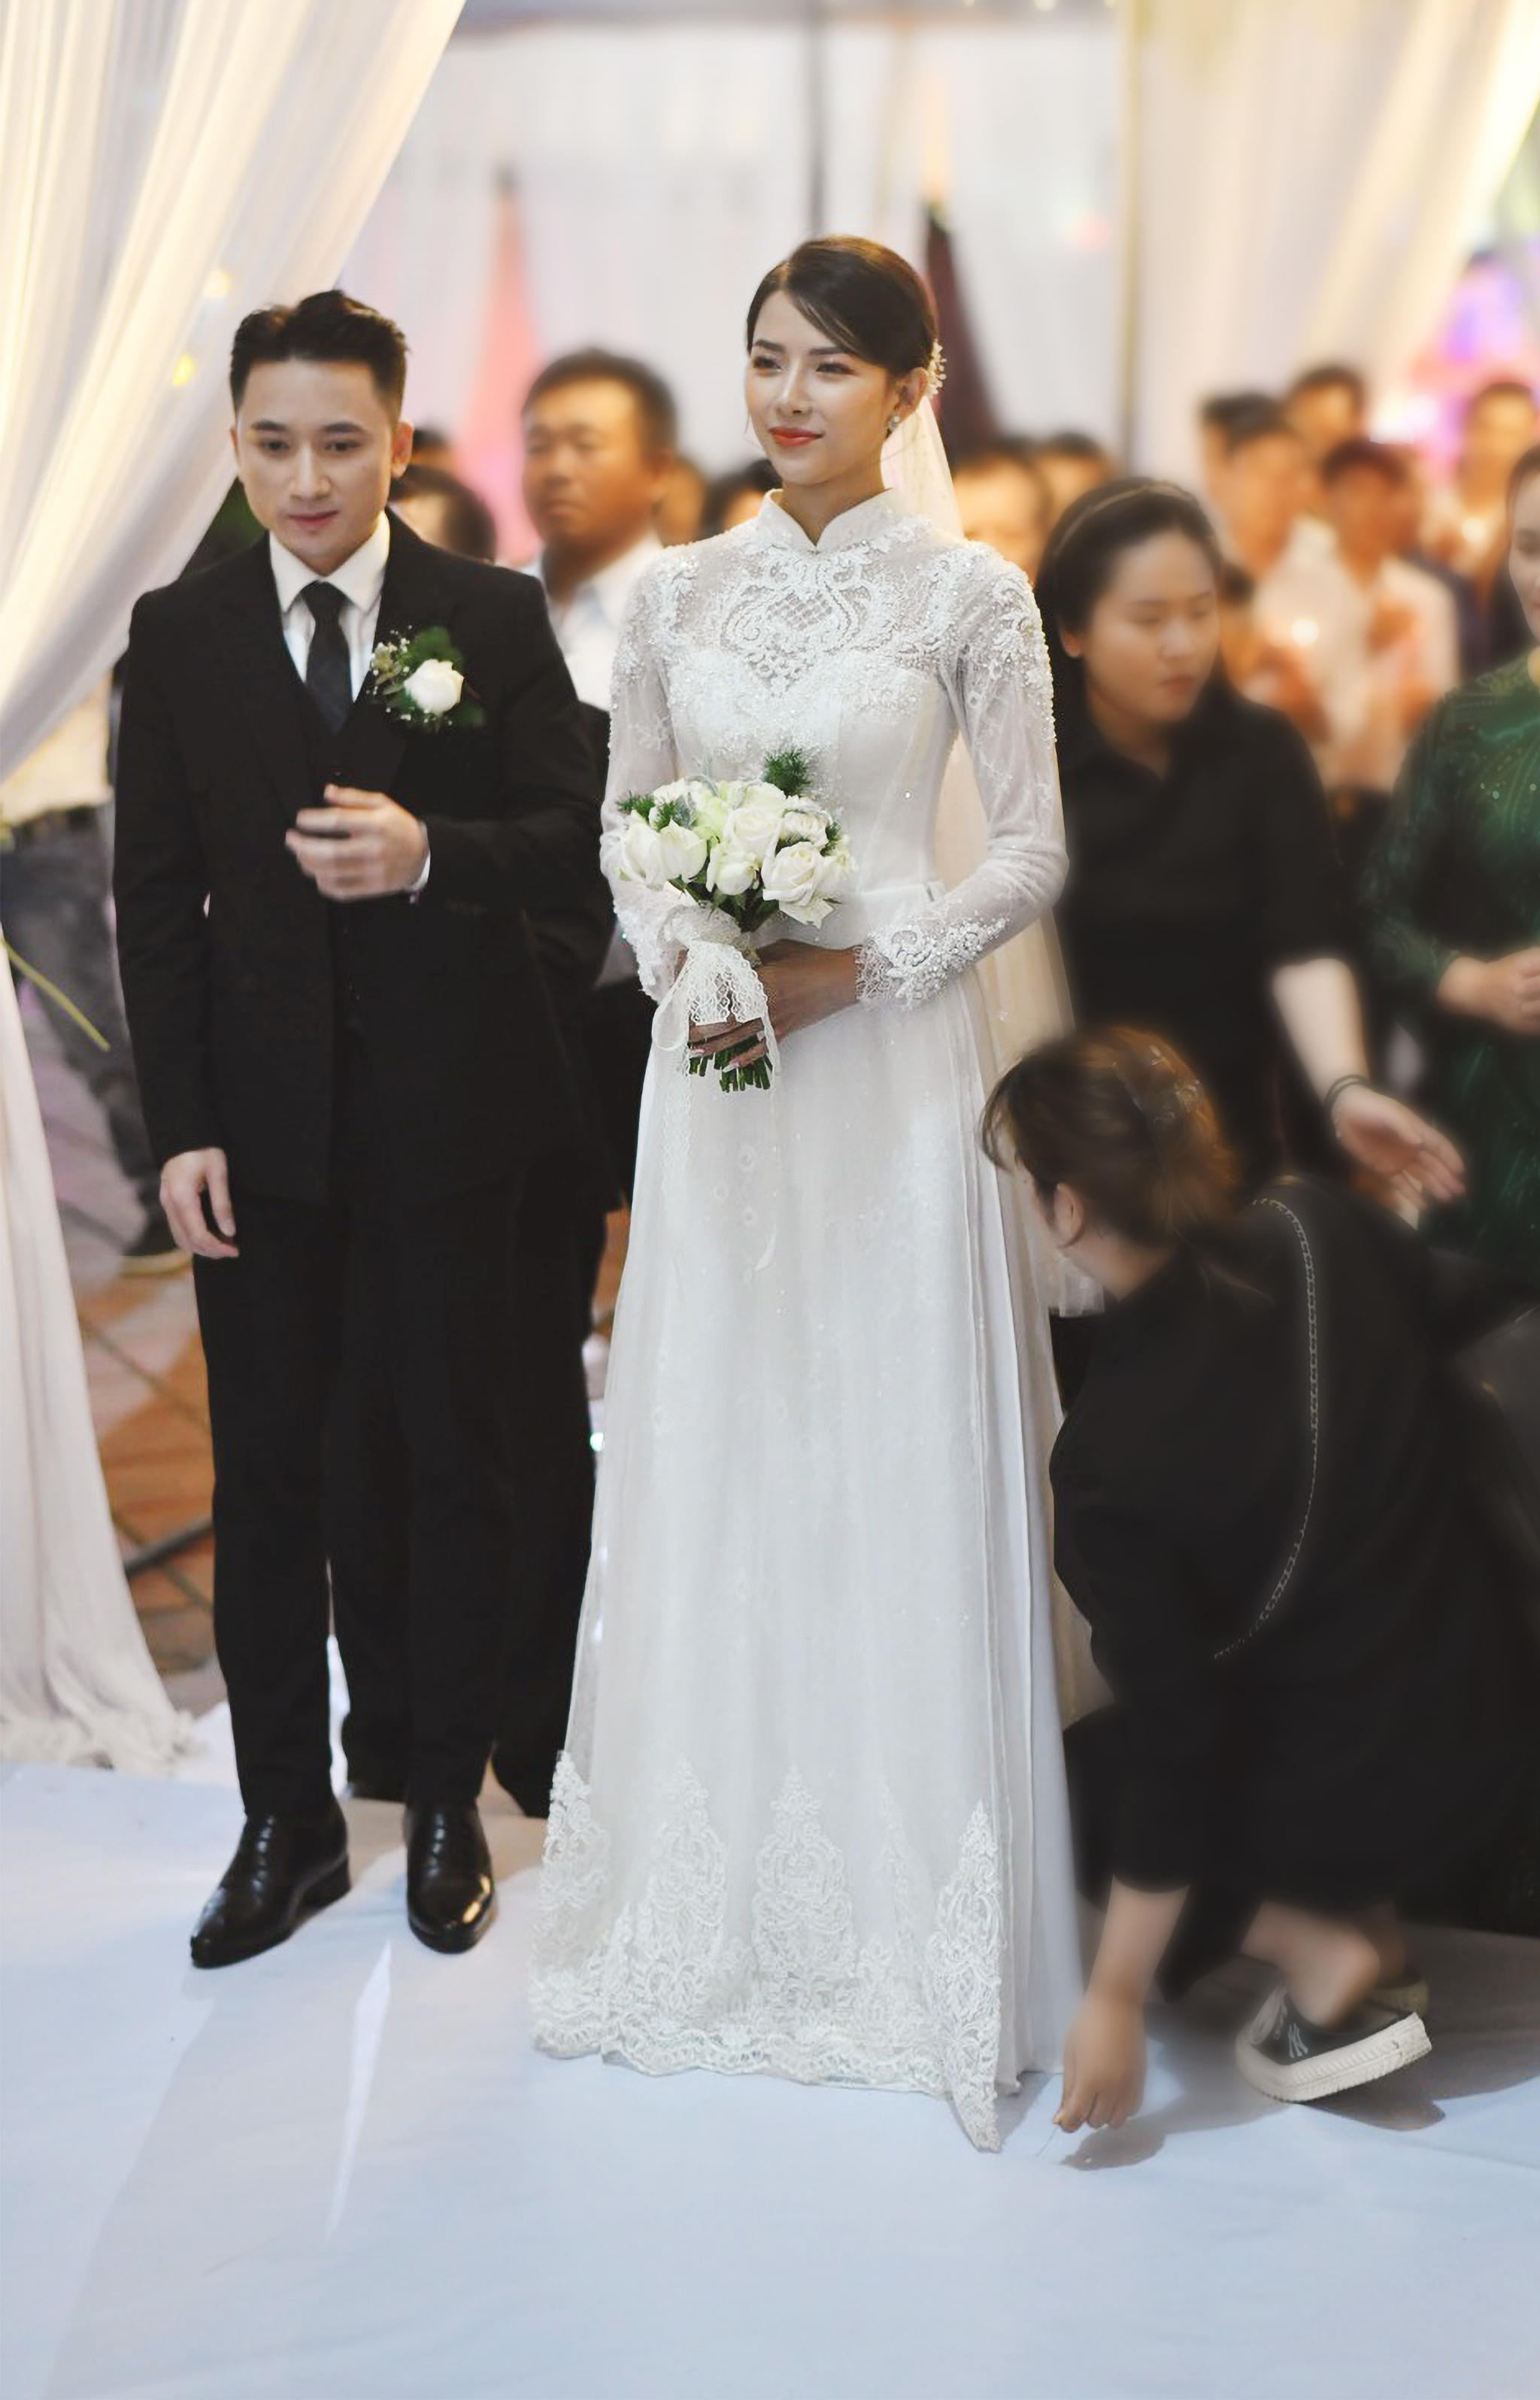 Bóc áo dài cưới của vợ Phan Mạnh Quỳnh: Đính tới 8000 viên đá swarovski đắt tiền, đai corset làm nổi vòng 2 siêu thực của cô dâu - Ảnh 3.